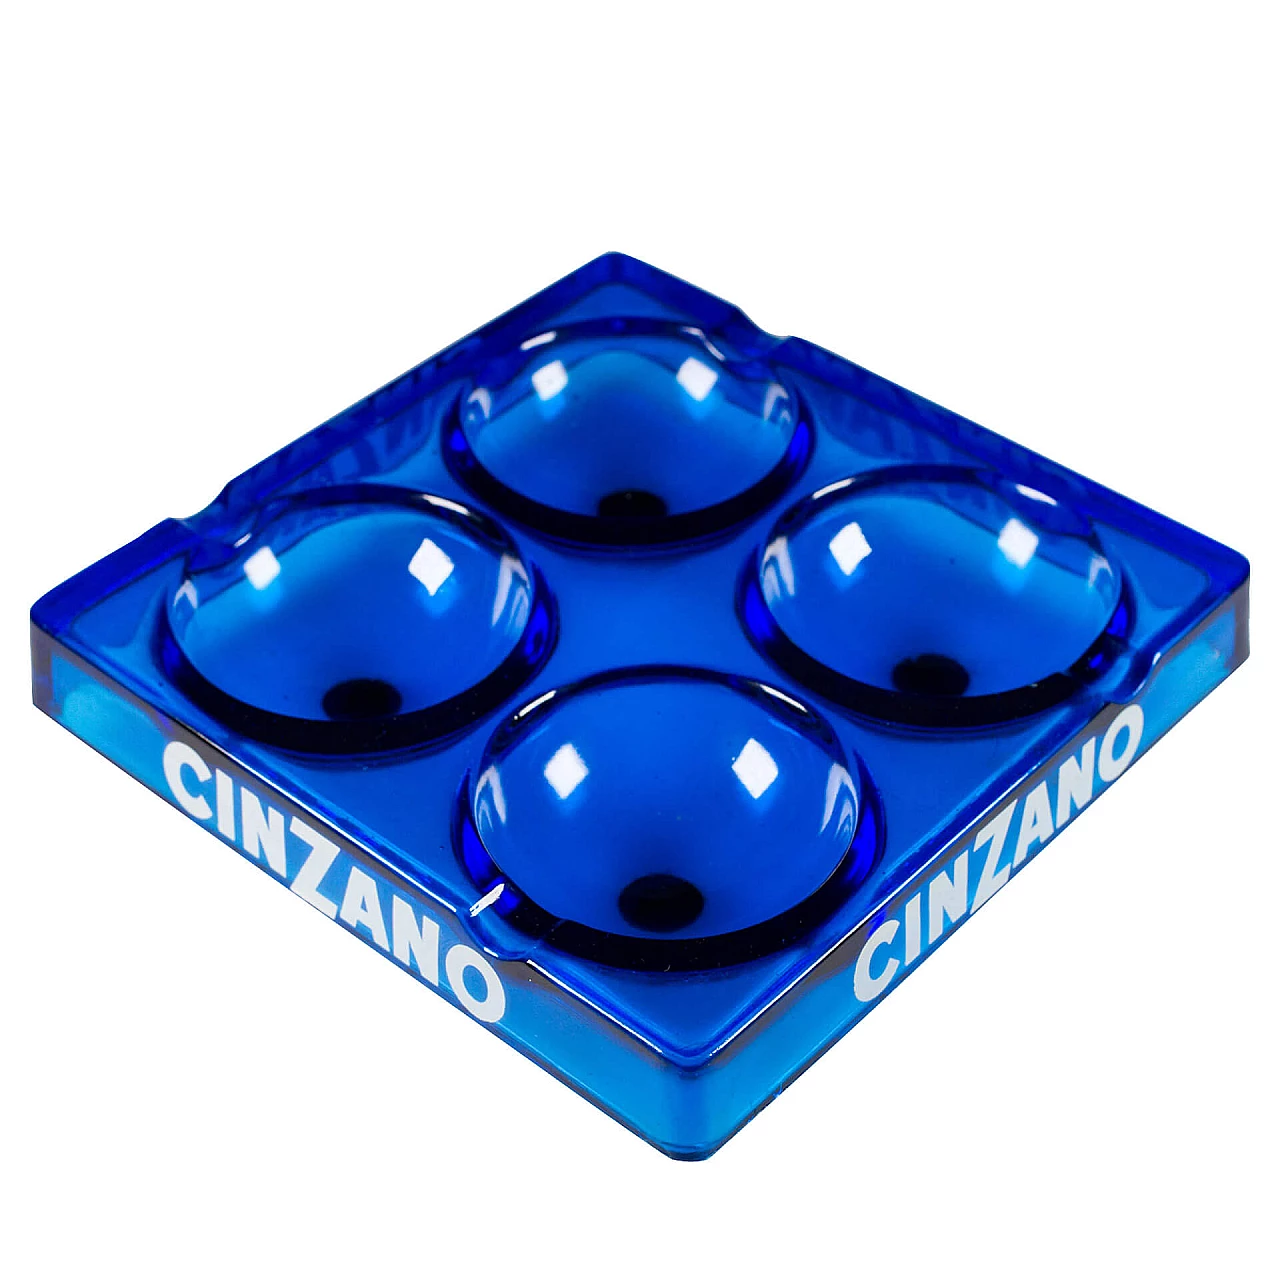 Cinzano ashtray in blue glass, 1960s 1113636